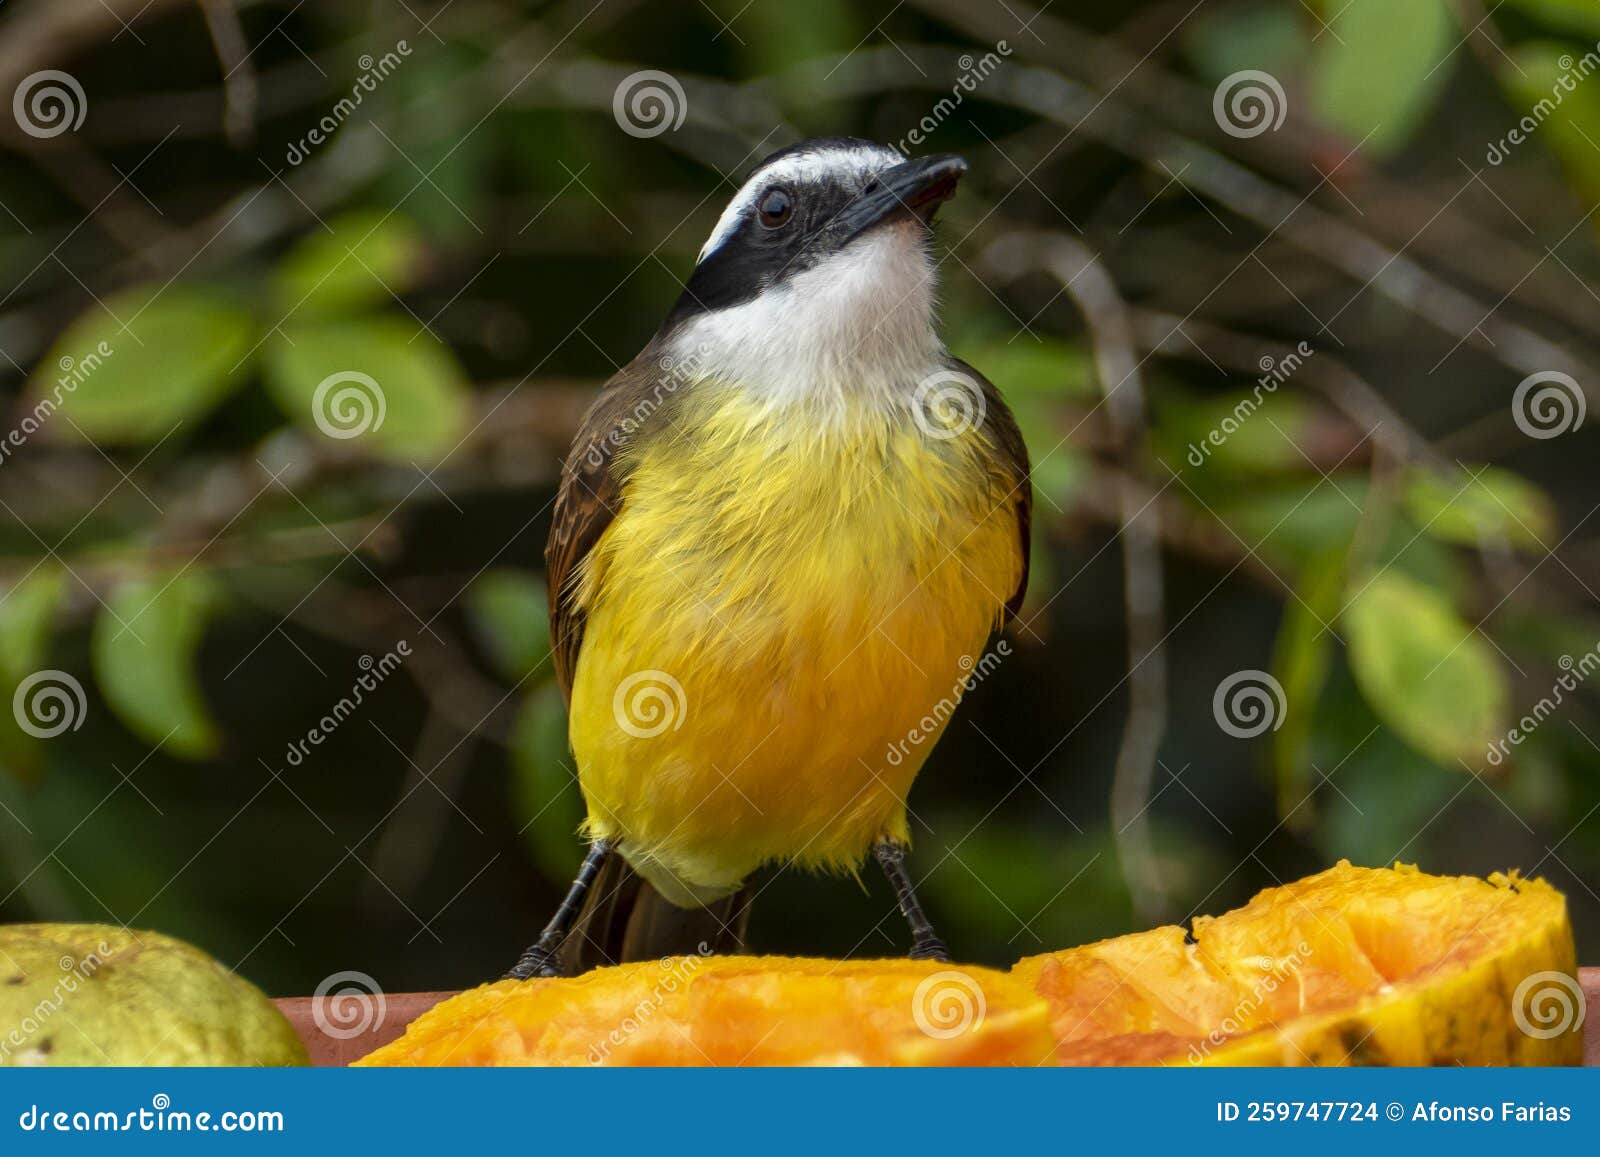 the great kiskadee pitangus sulphuratus is a passerine bird in the tyrant flycatcher family tyrannidae.